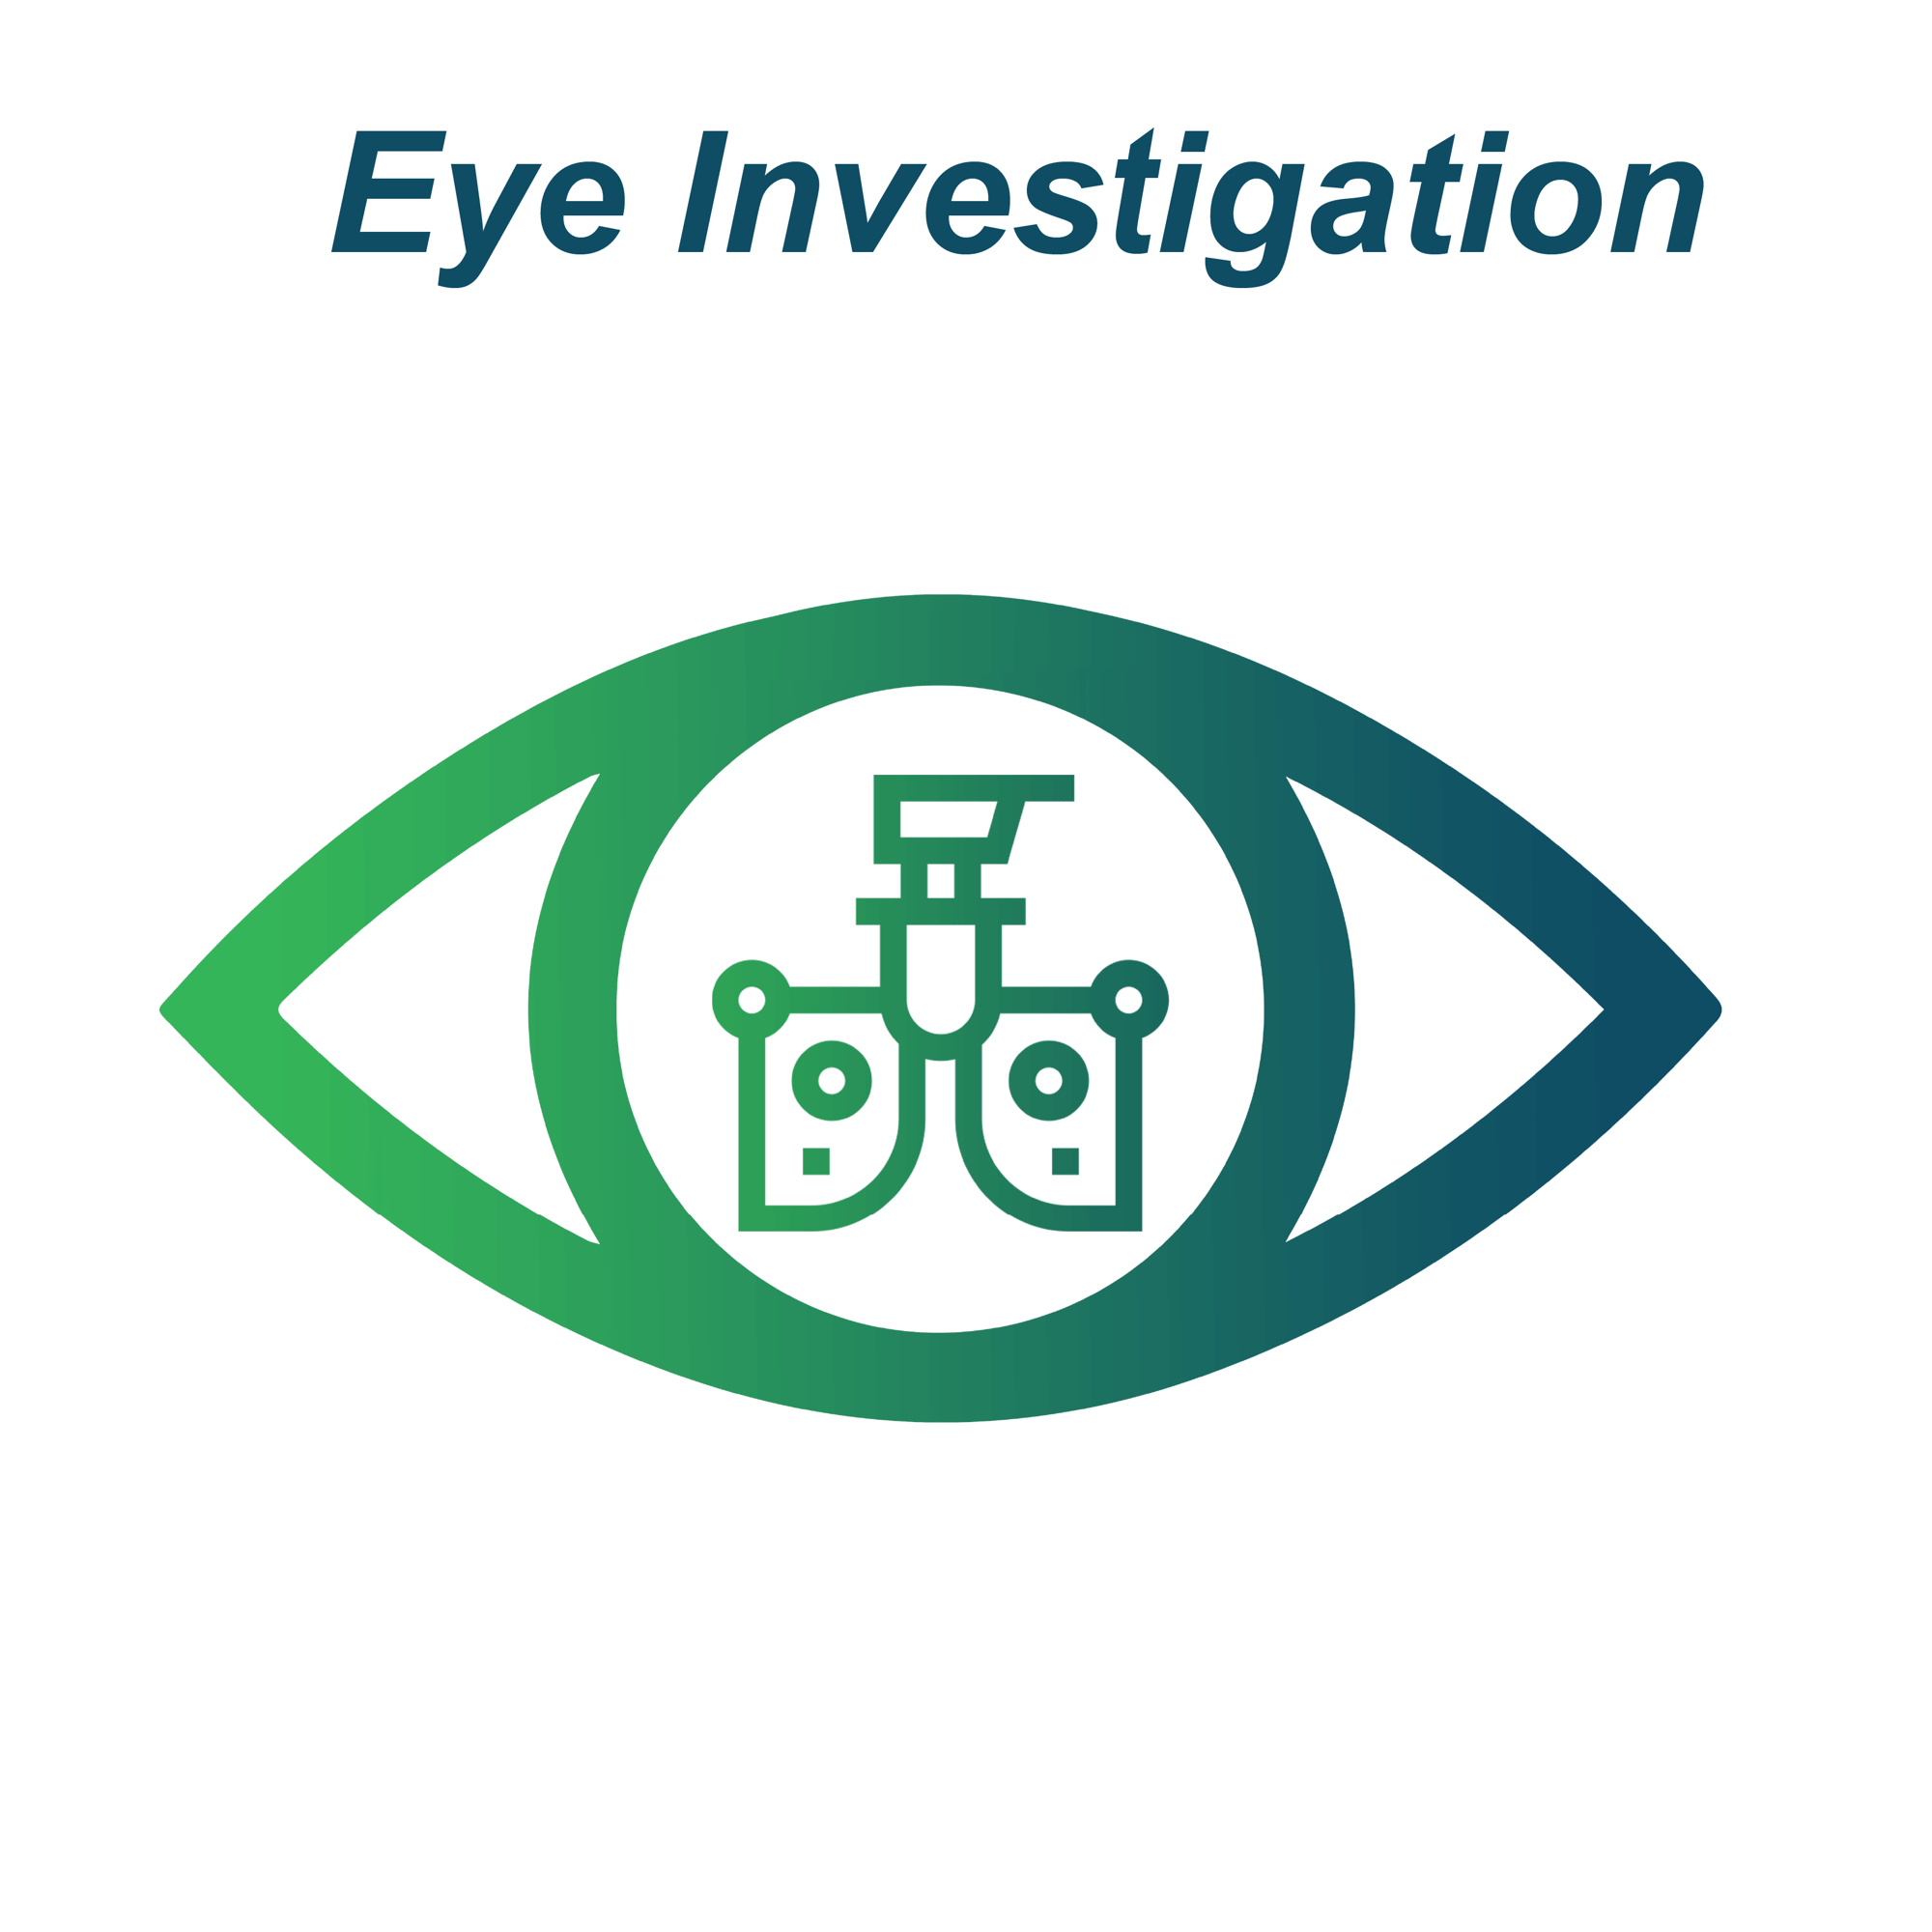 Eye Investigation (1)